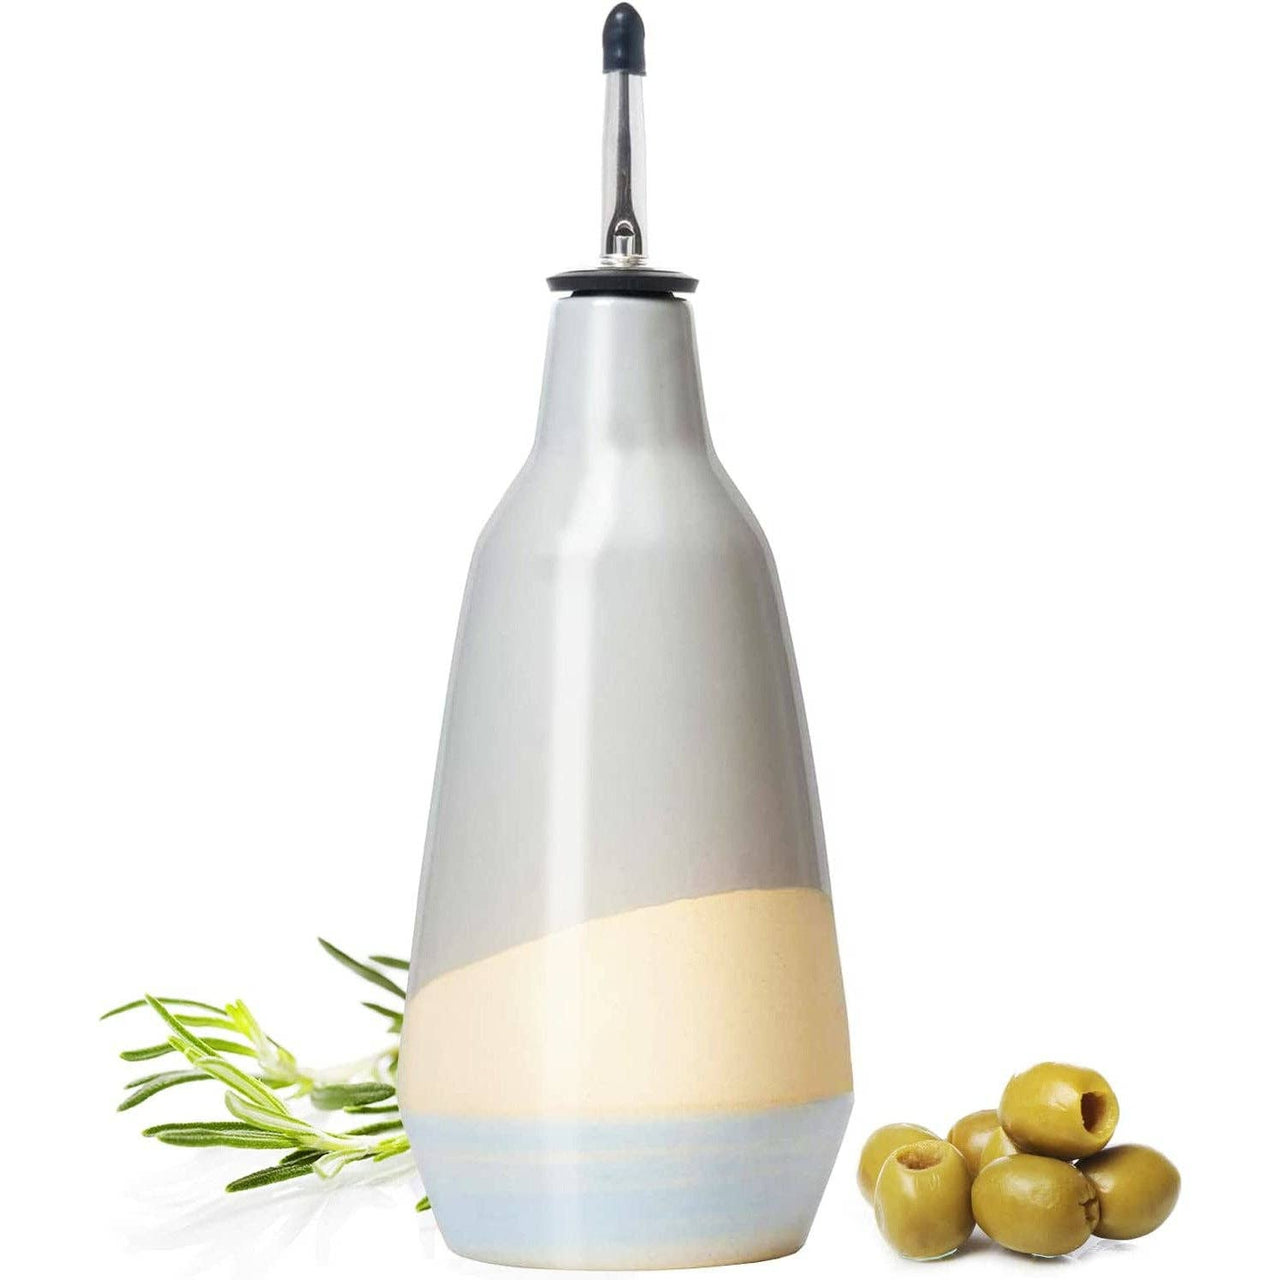 Gute Cruet Ceramic Olive Oil Dispenser Bottle - 400ml  The Wine Savant / Khen Glassware   